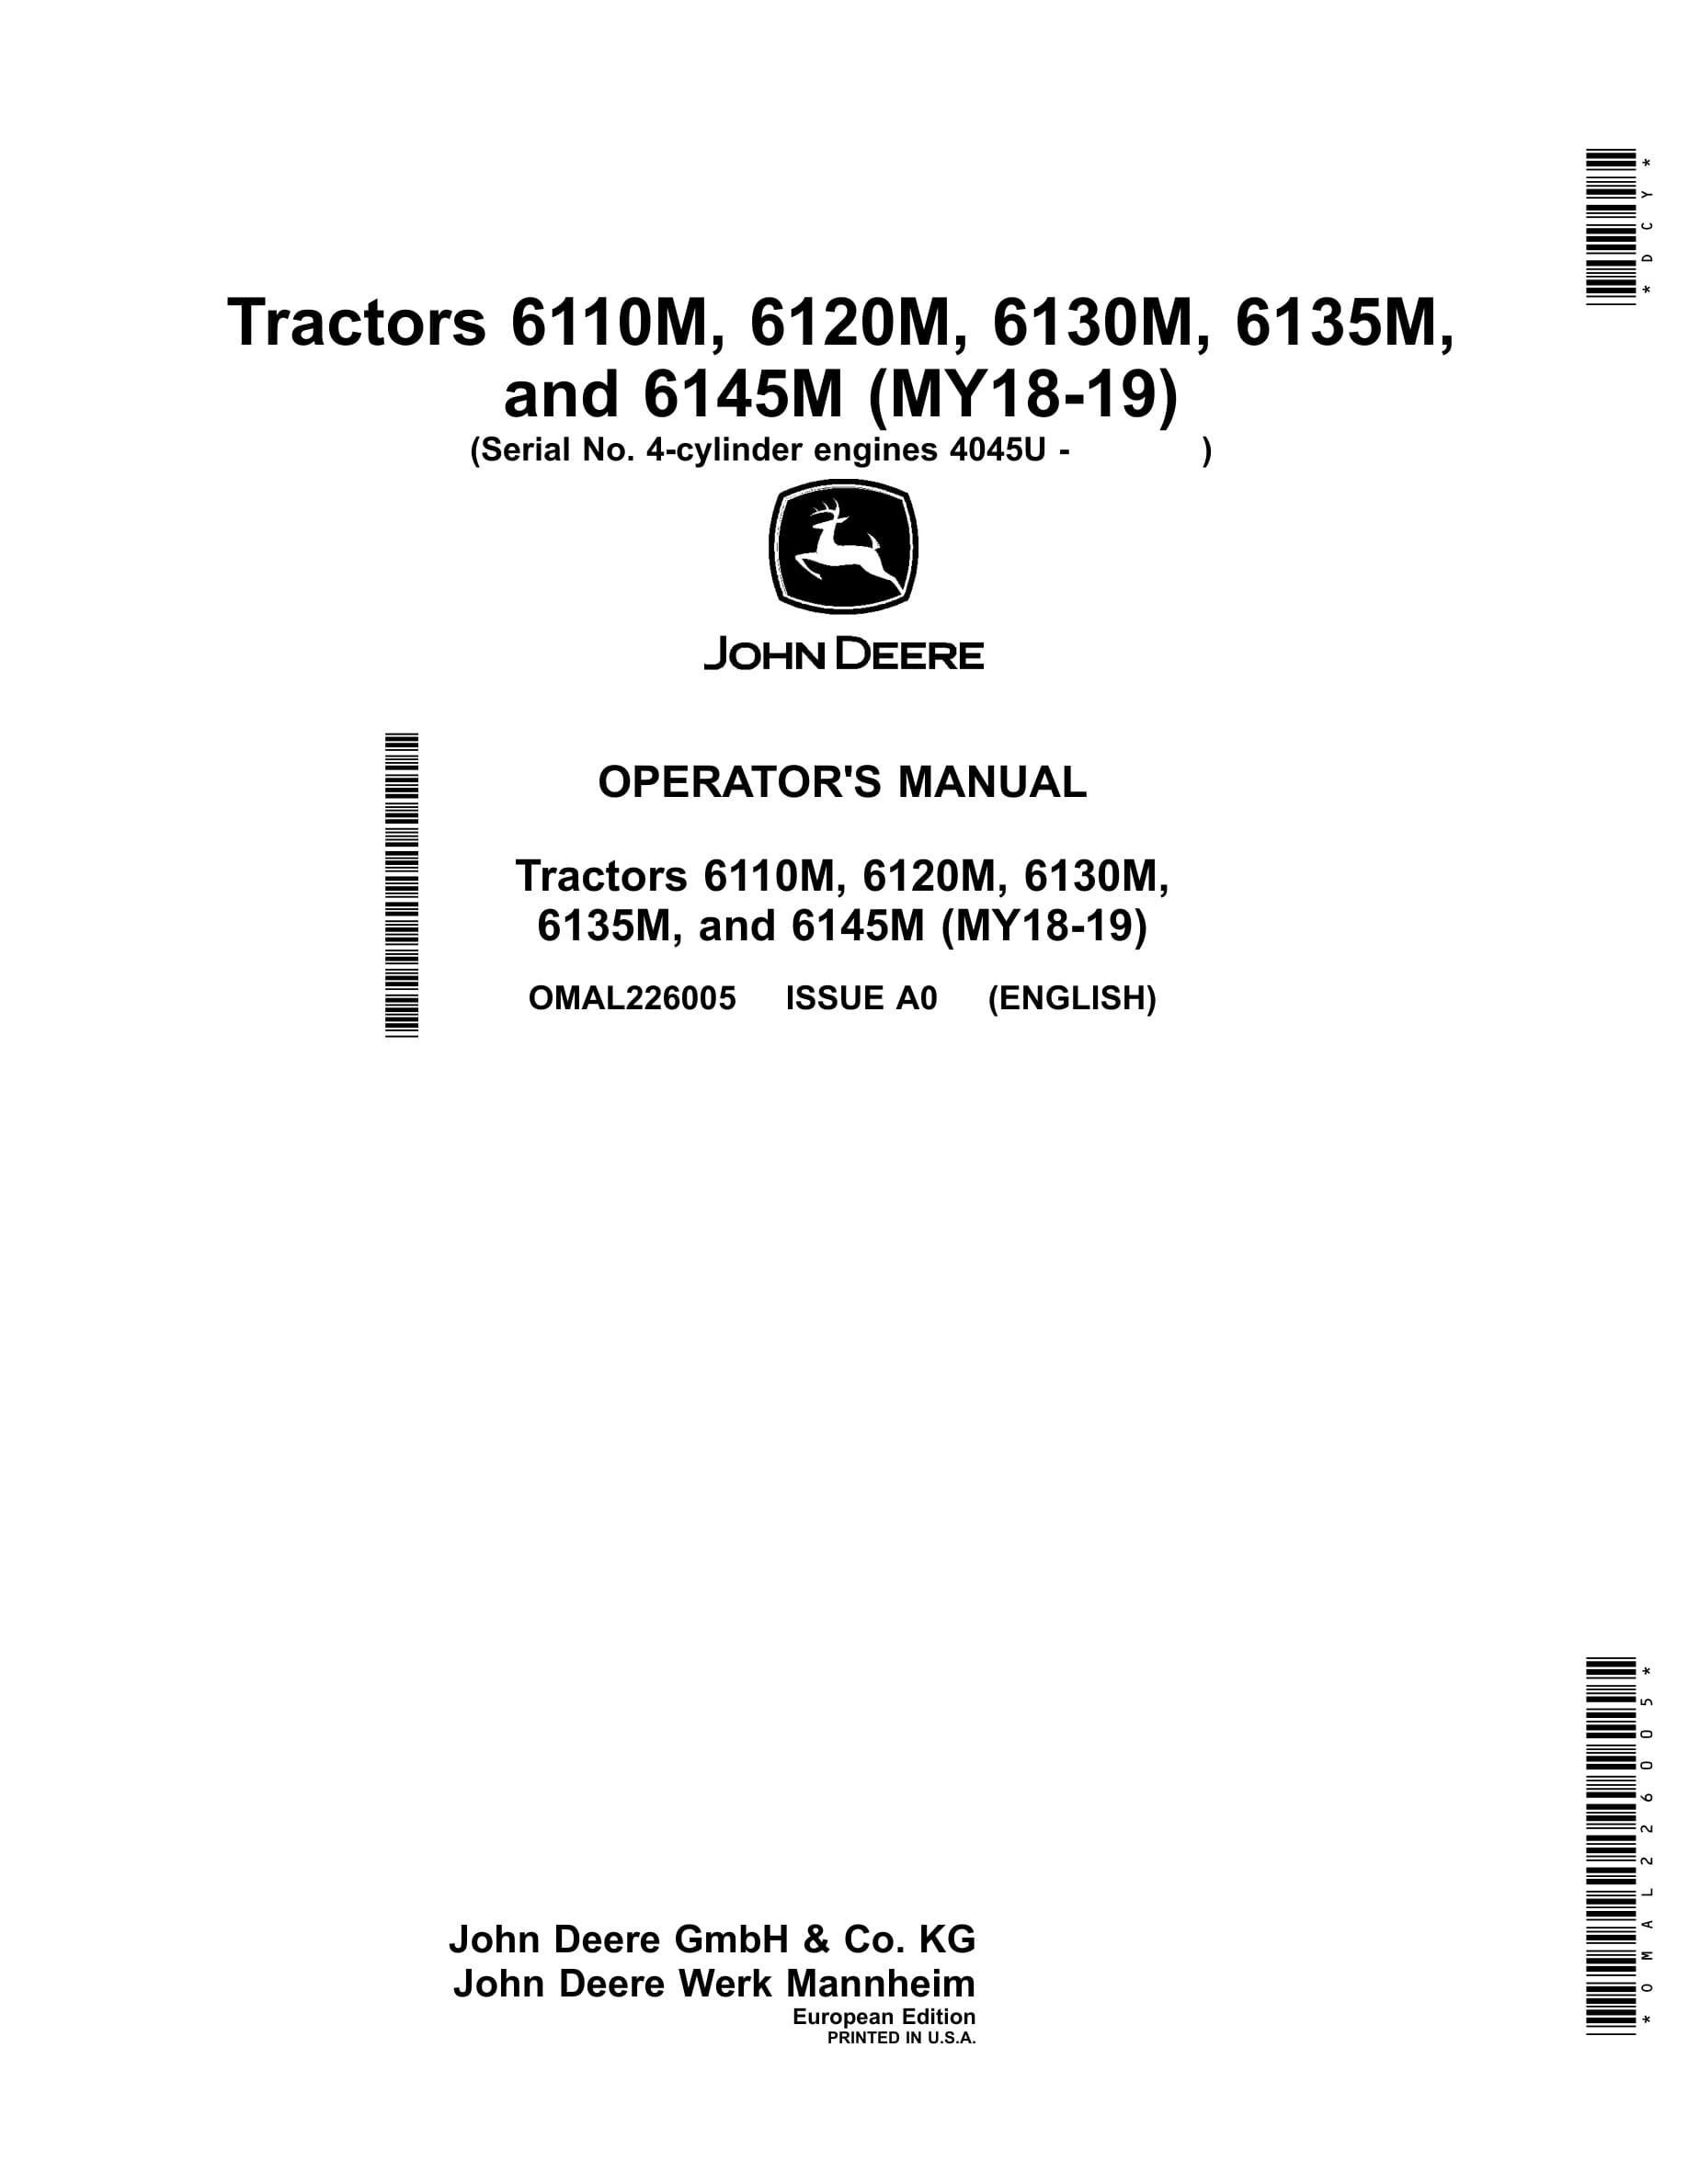 John Deere 6110m, 6120m, 6130m, 6135m, 6145m Tractors Operator Manuals OMAL226005-1